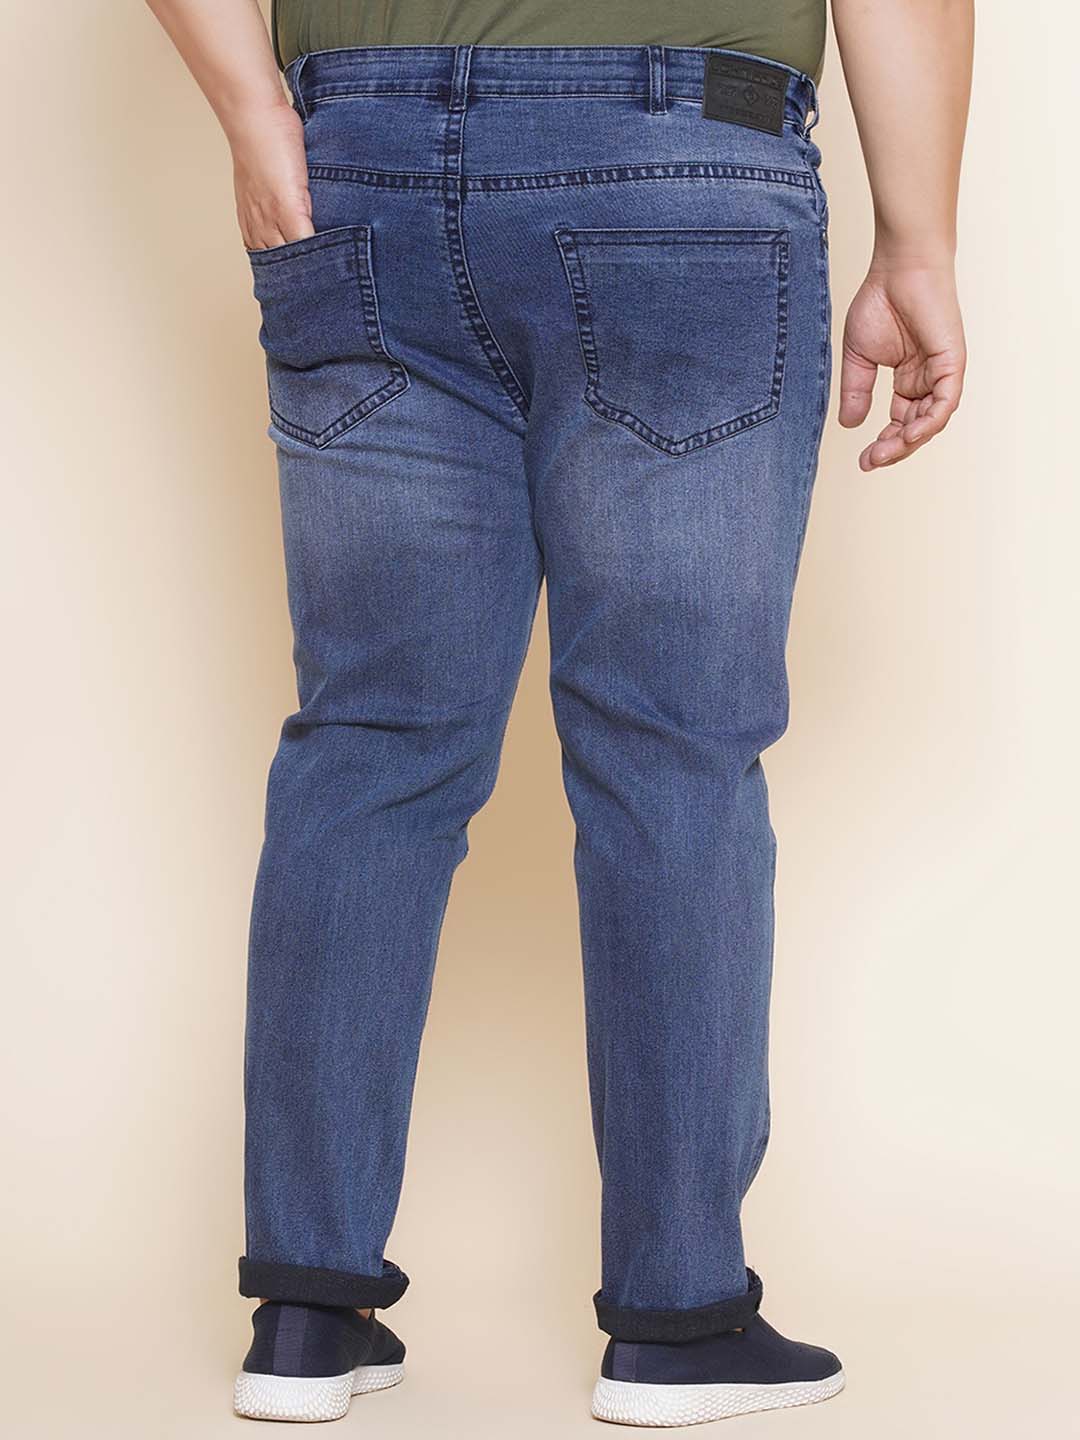 bottomwear/jeans/JPJ12284A/jpj12284a-5.jpg